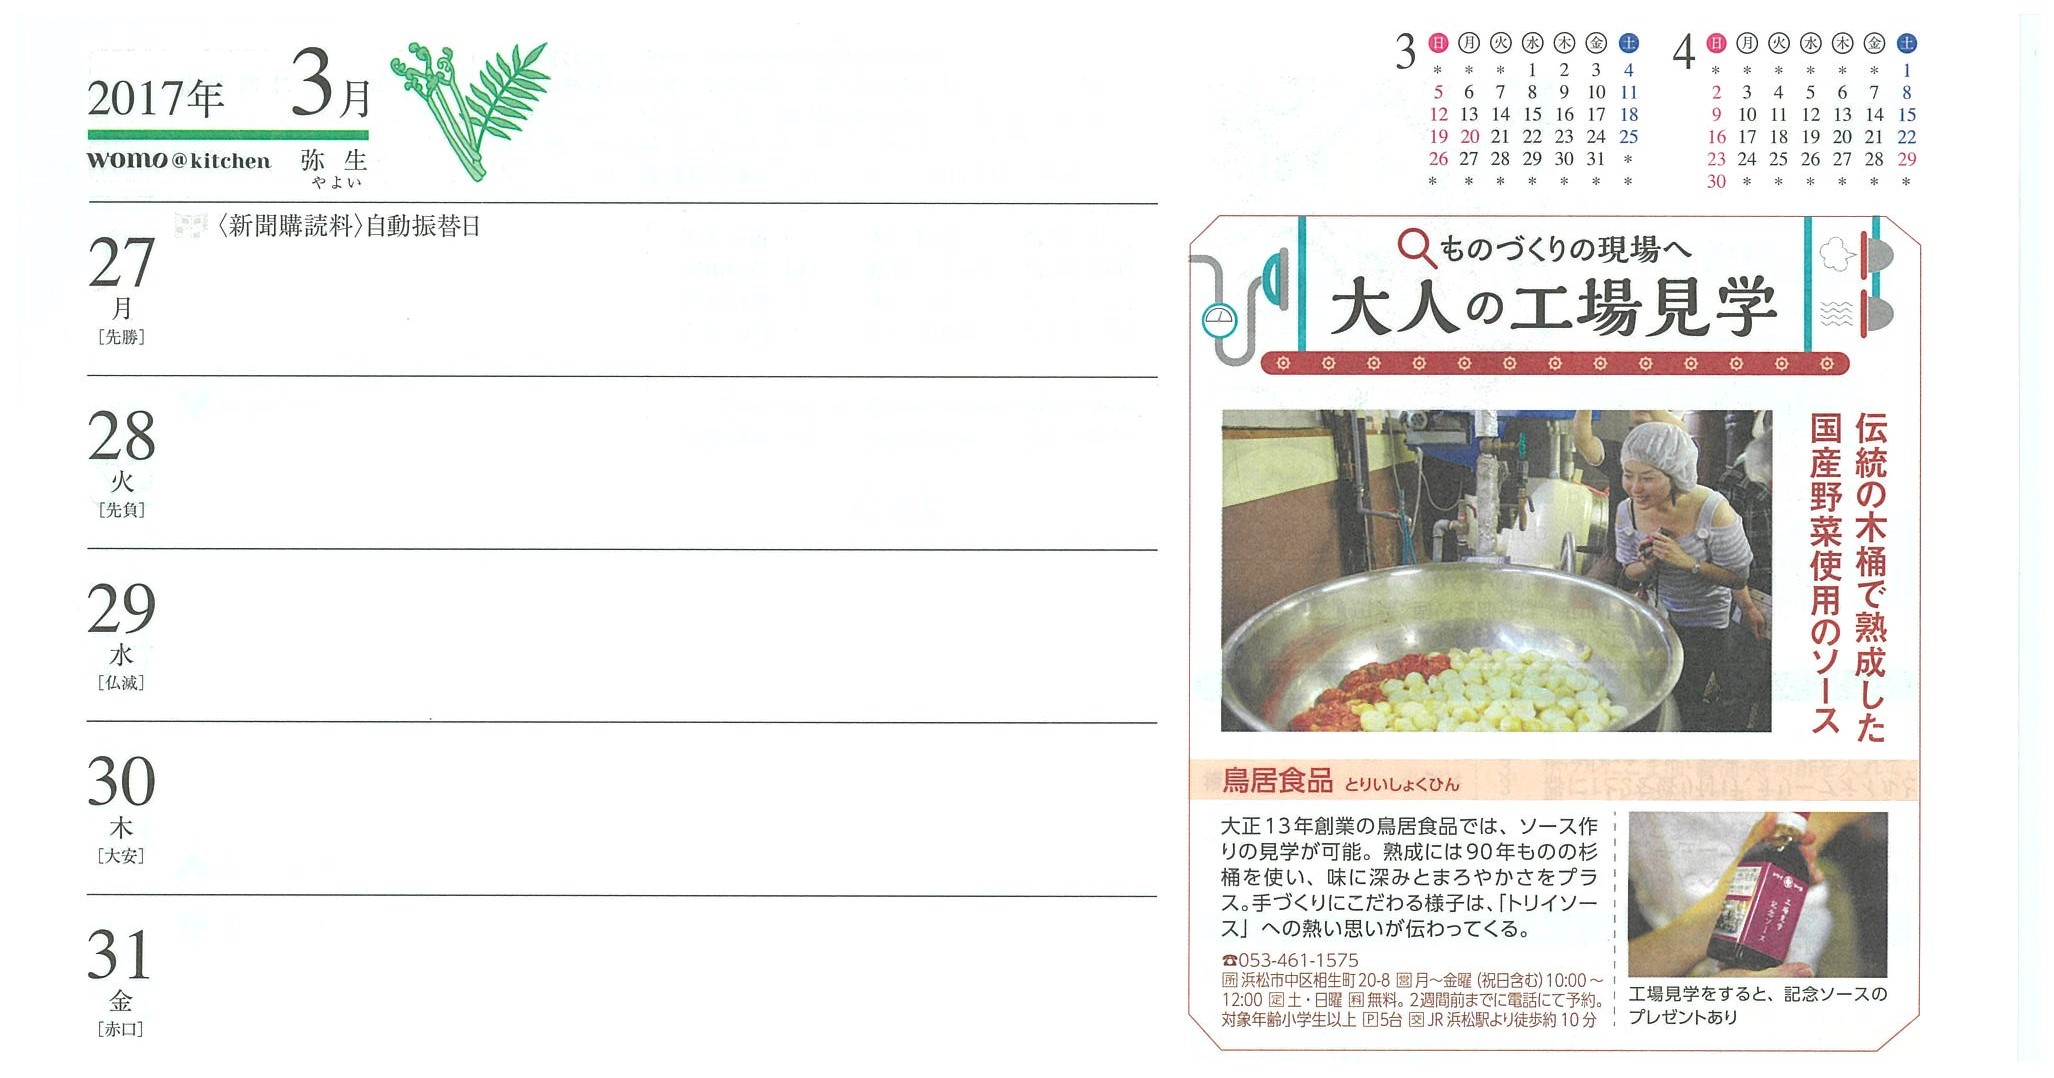 http://www.torii-sauce.jp/media/20170224114452-0001.jpg